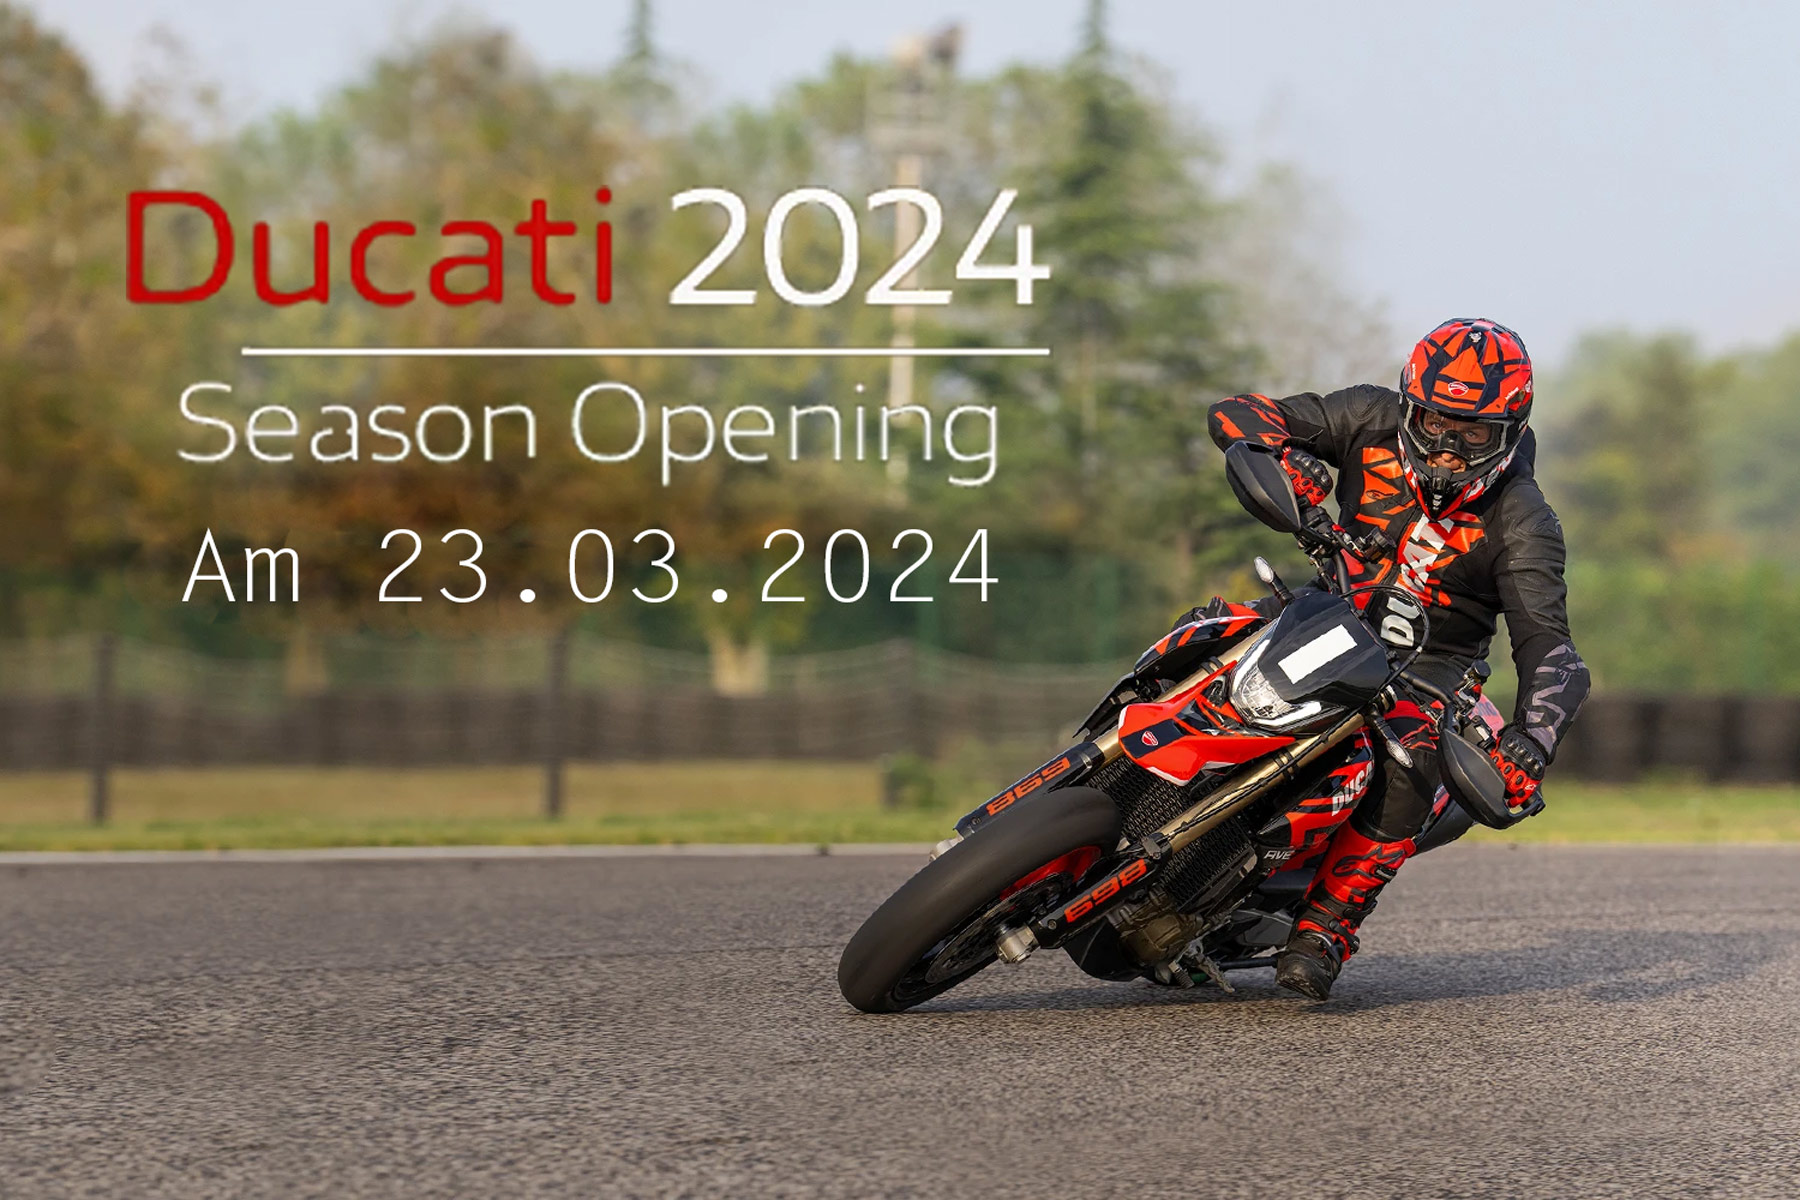 ----Ducati_Season_Opening_2024.jpg